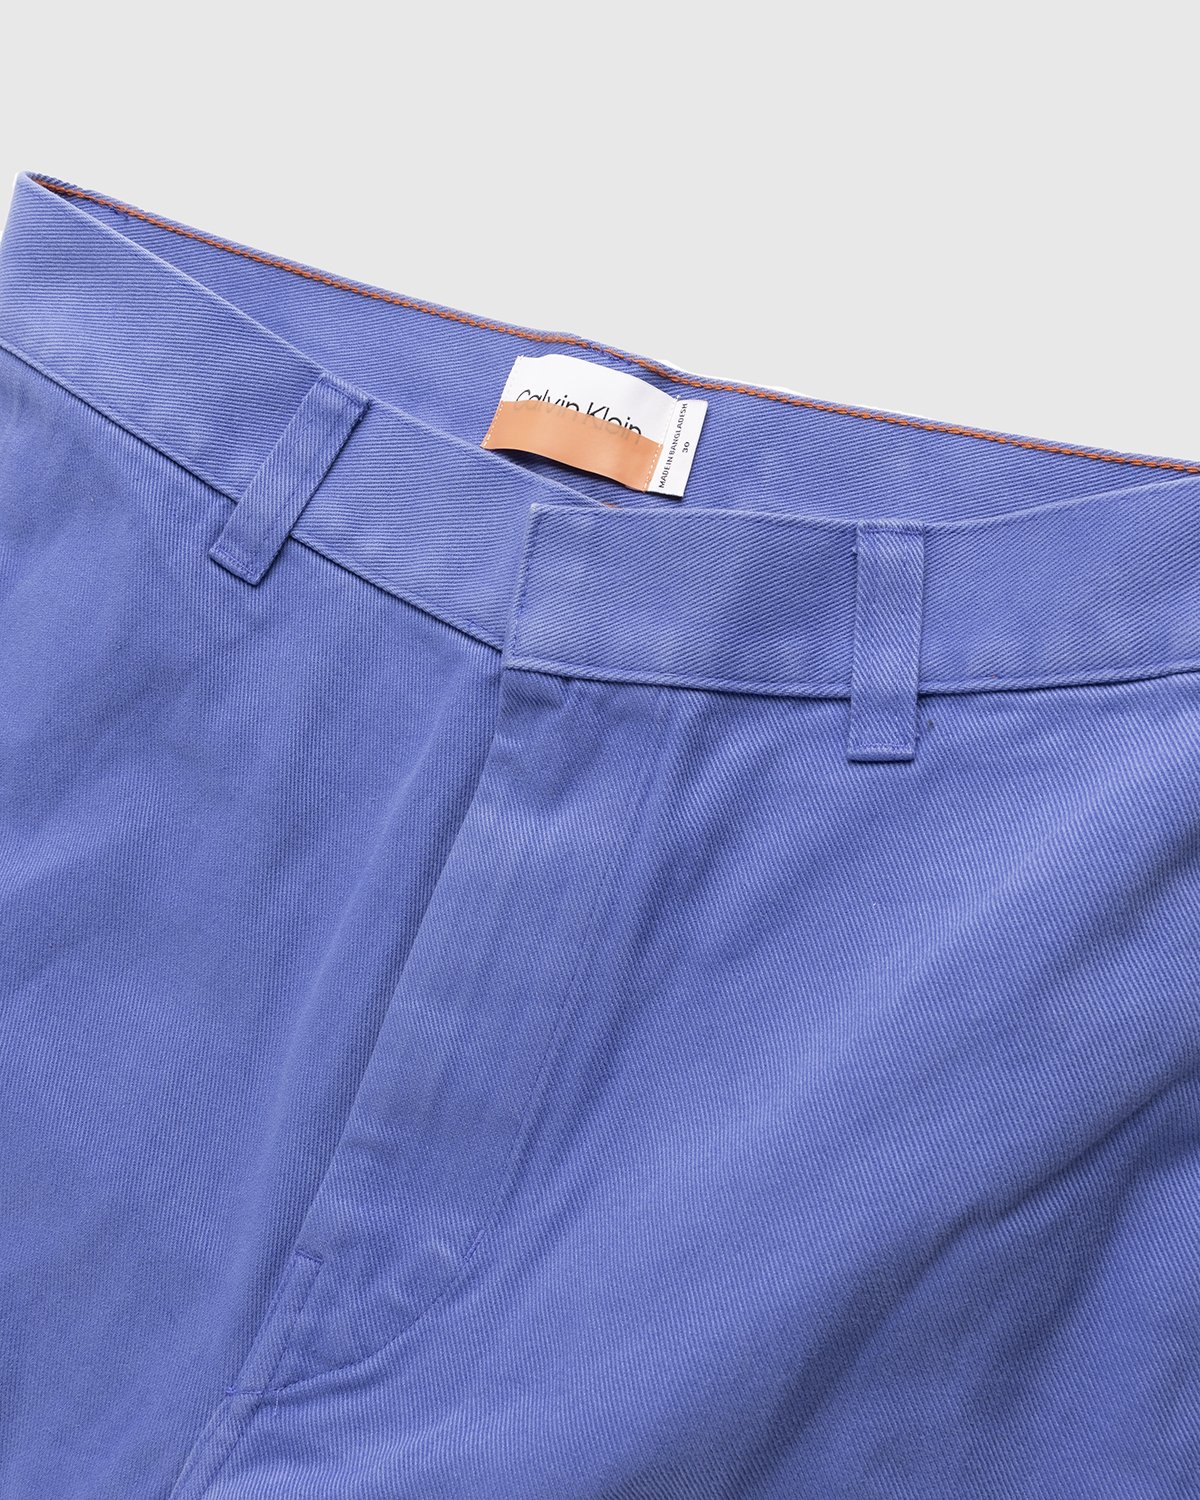 Heron Preston x Calvin Klein - Mens Straight Leg Utility Pant Amparo Blue - Clothing - Blue - Image 5